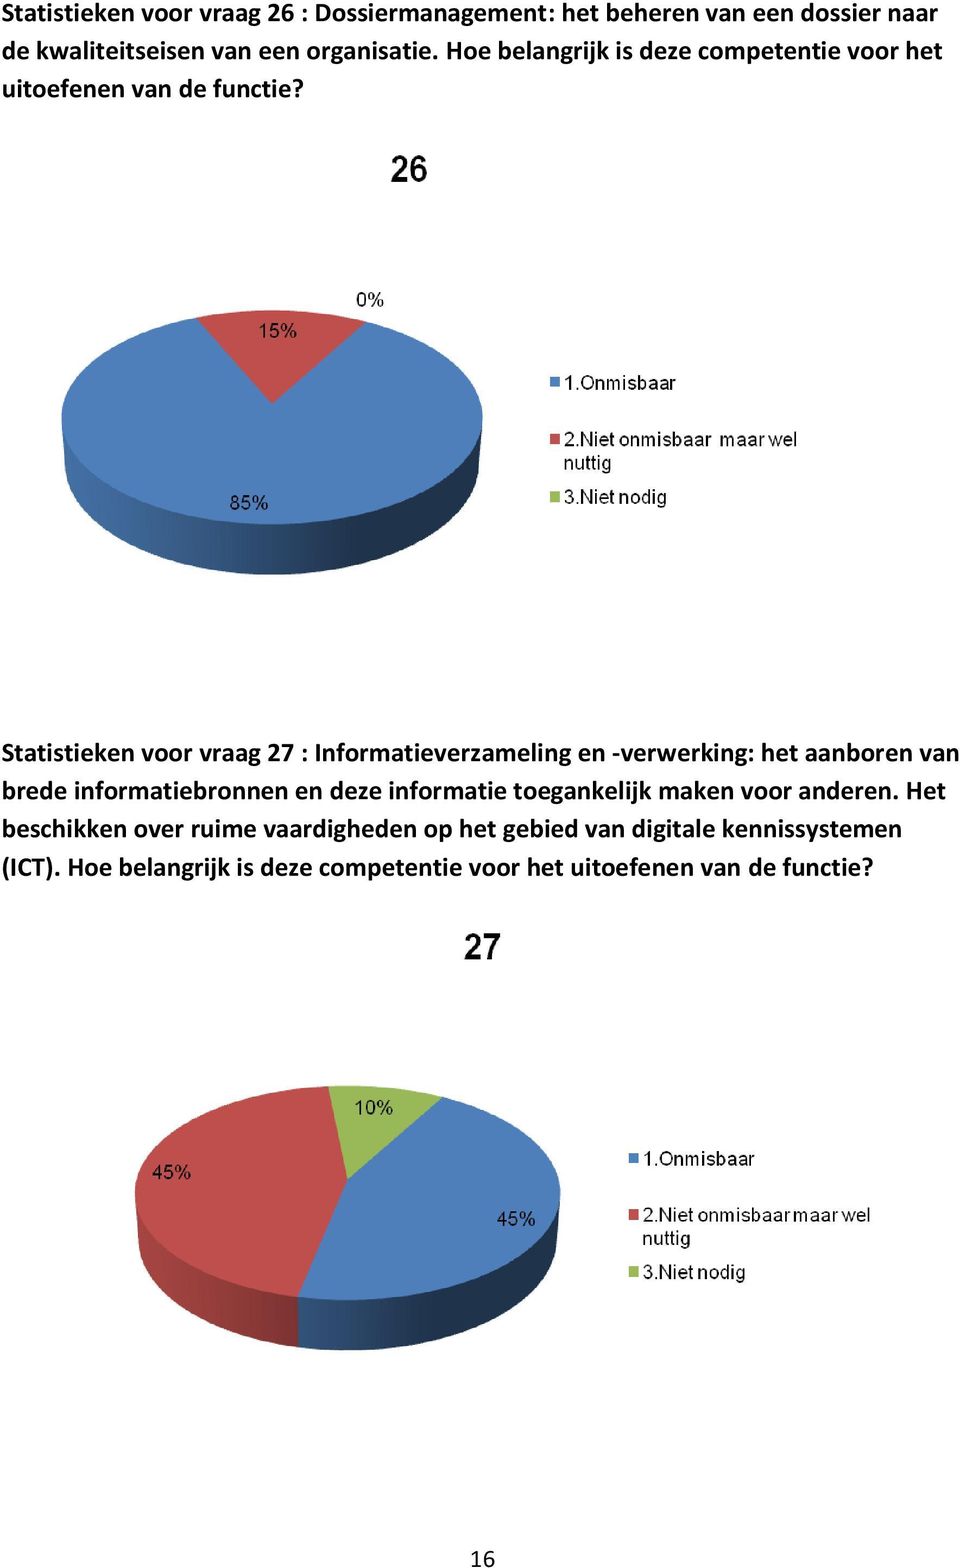 Statistieken voor vraag 27 : Informatieverzameling en -verwerking: het aanboren van brede informatiebronnen en deze informatie